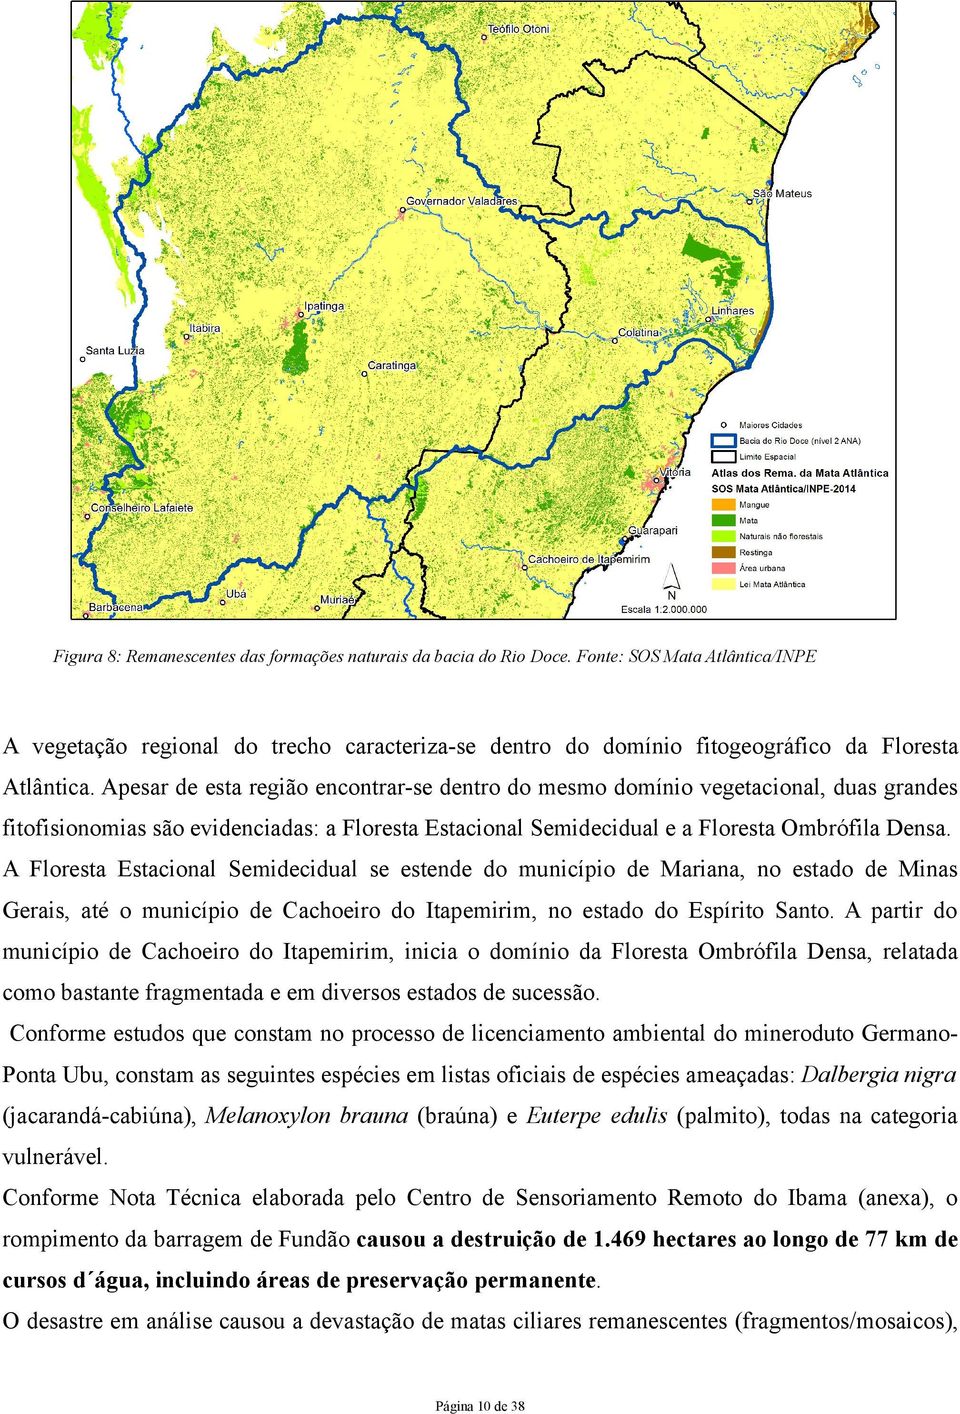 Apesar de esta região encontrar-se dentro do mesmo domínio vegetacional, duas grandes fitofisionomias são evidenciadas: a Floresta Estacional Semidecidual e a Floresta Ombrófila Densa.